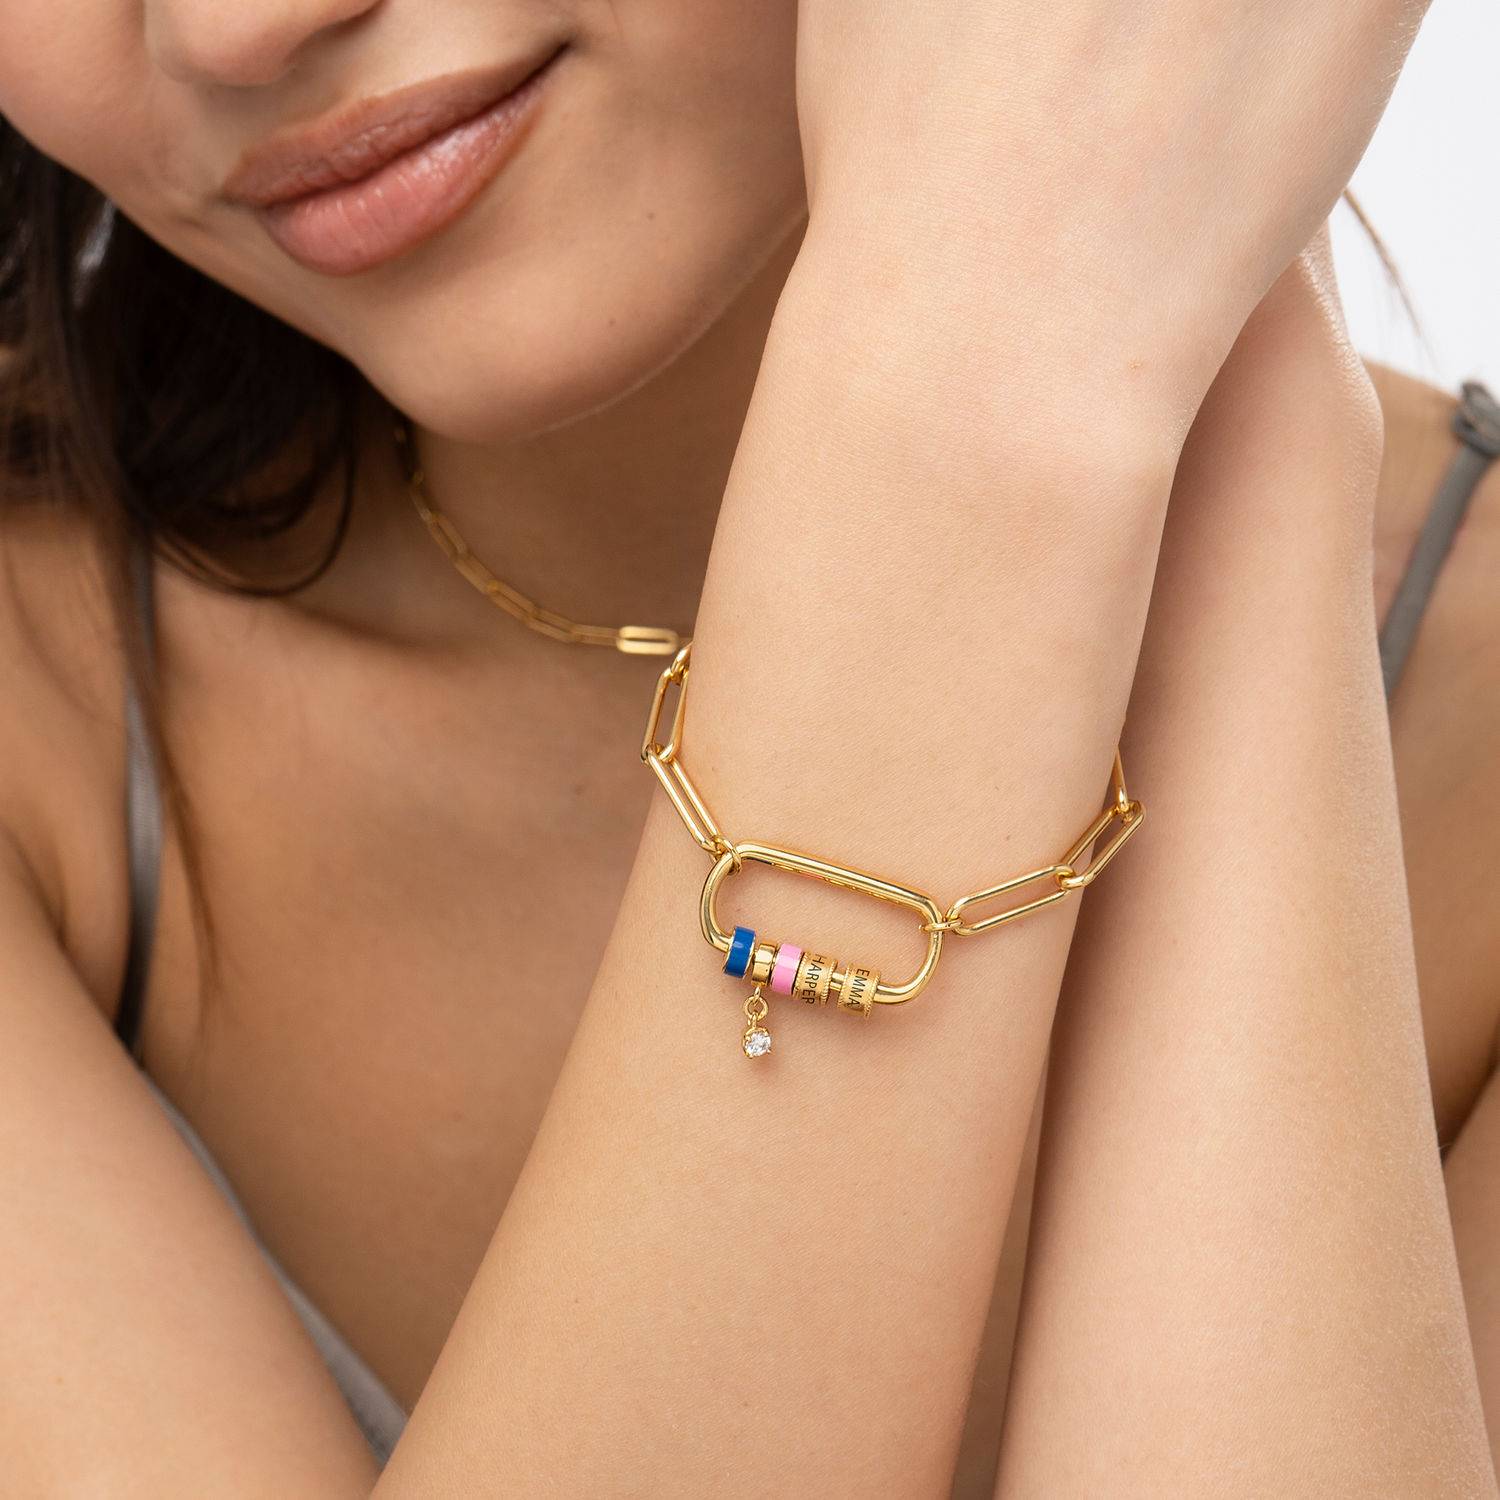 Linda armband met ovale sluiting en diamant in 18k goud vermeil-3 Productfoto